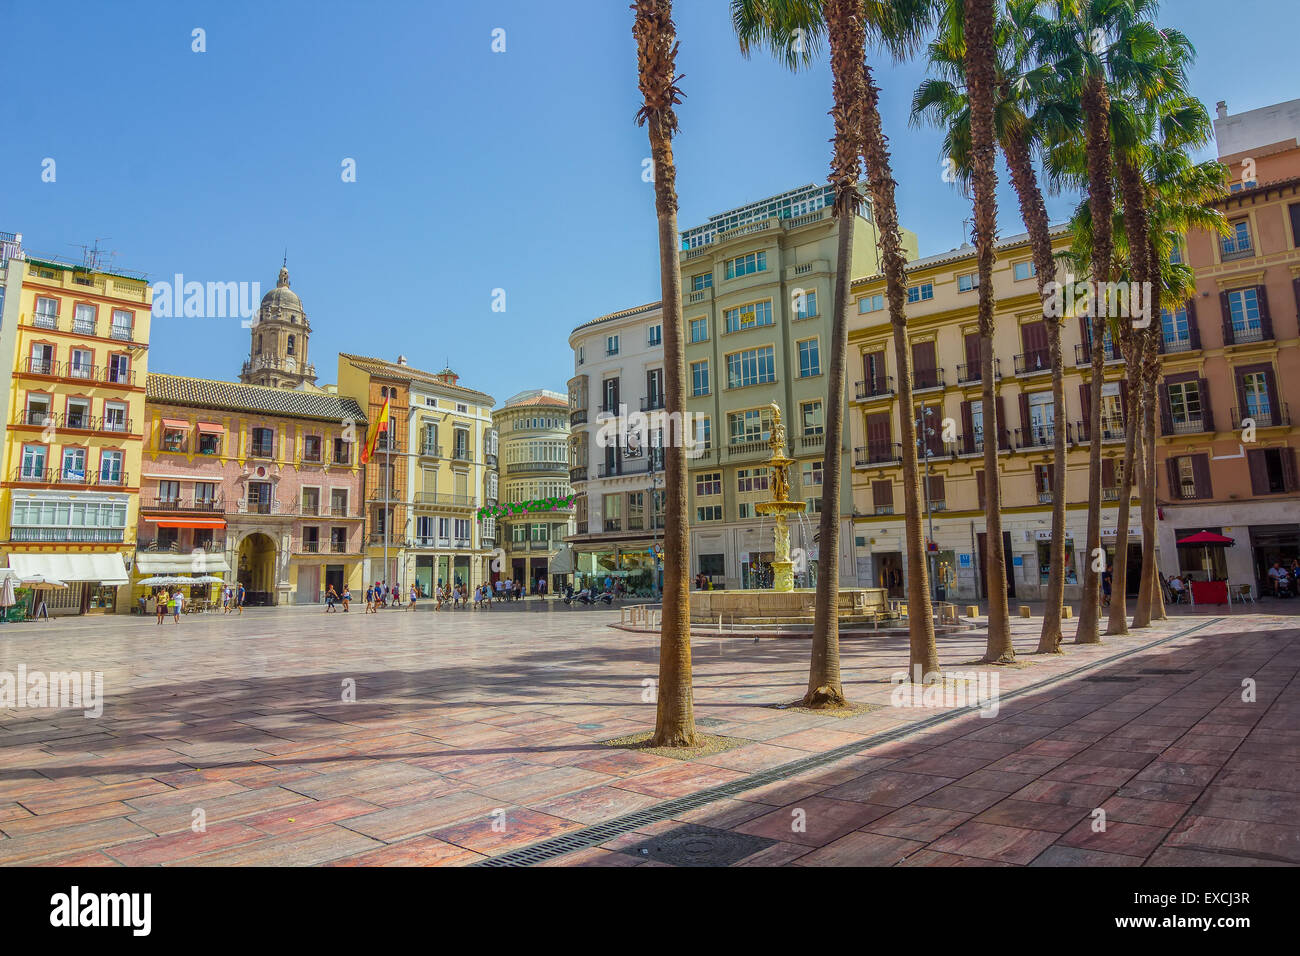 famous Plaza de la Constitucion, Malaga, Spain Stock Photo - Alamy